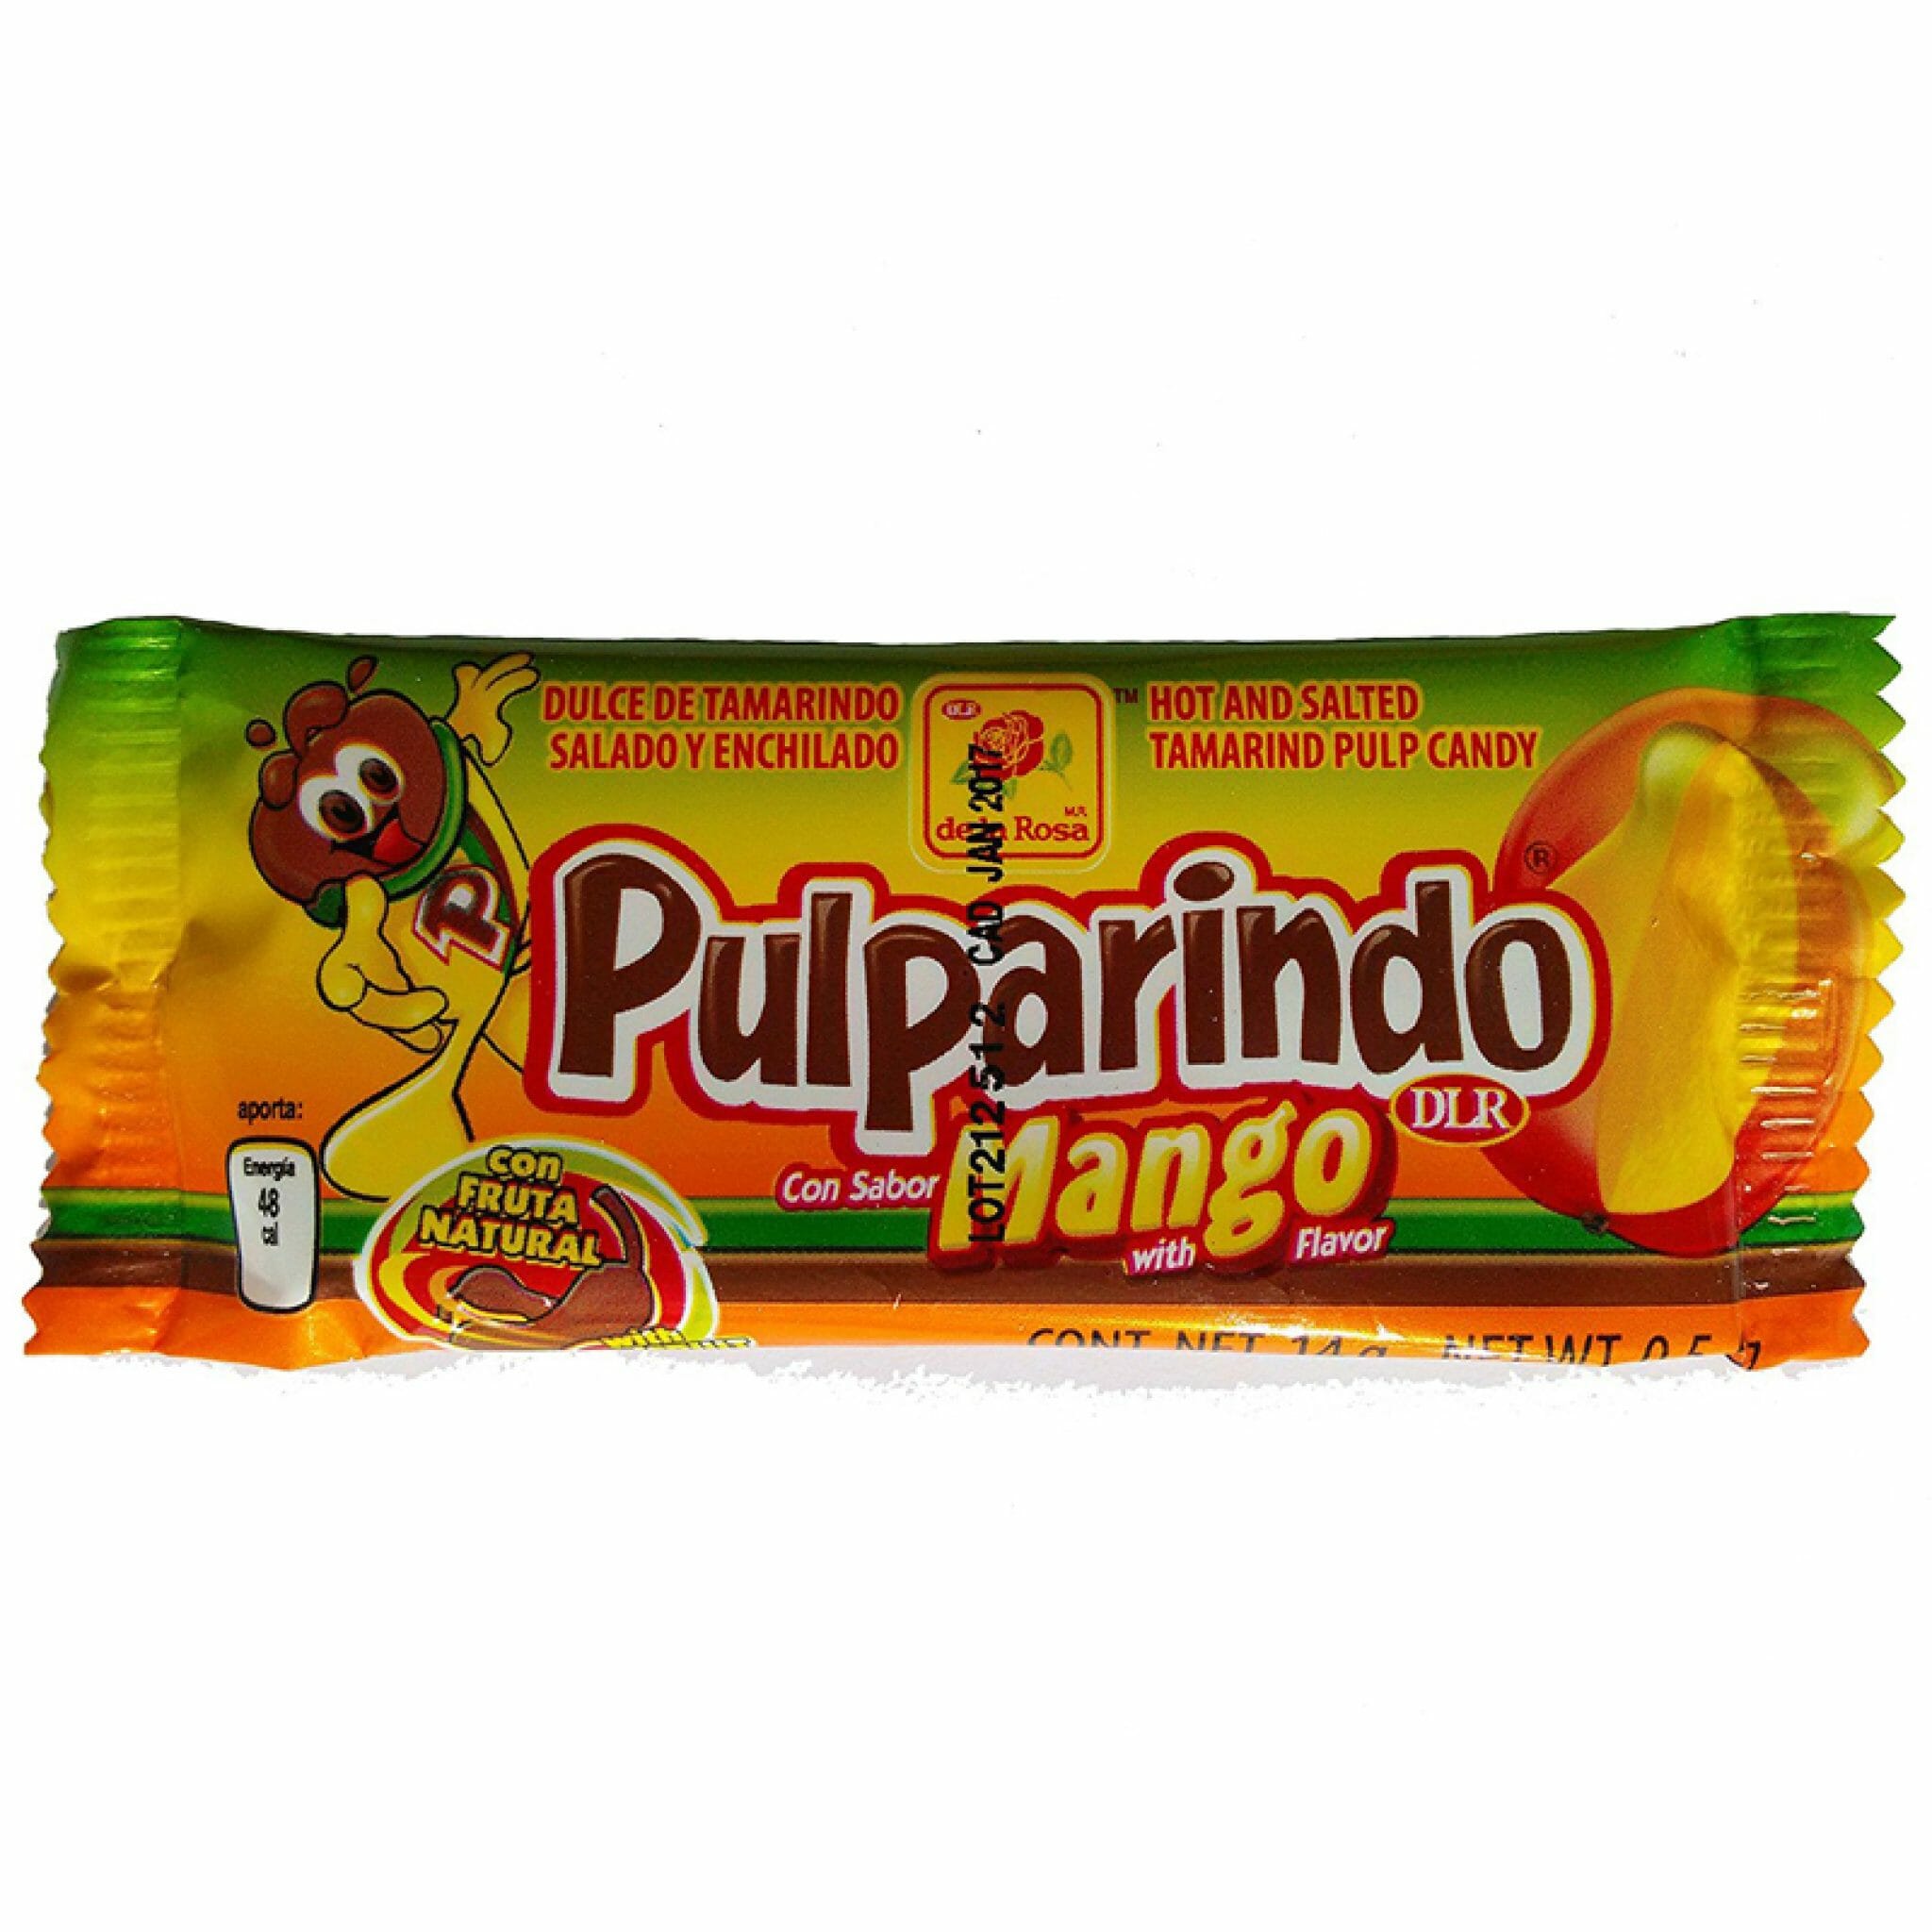 Pulparindo Mango Flavor Mexican Candy By De La Rosa Review 2 2048x2048 